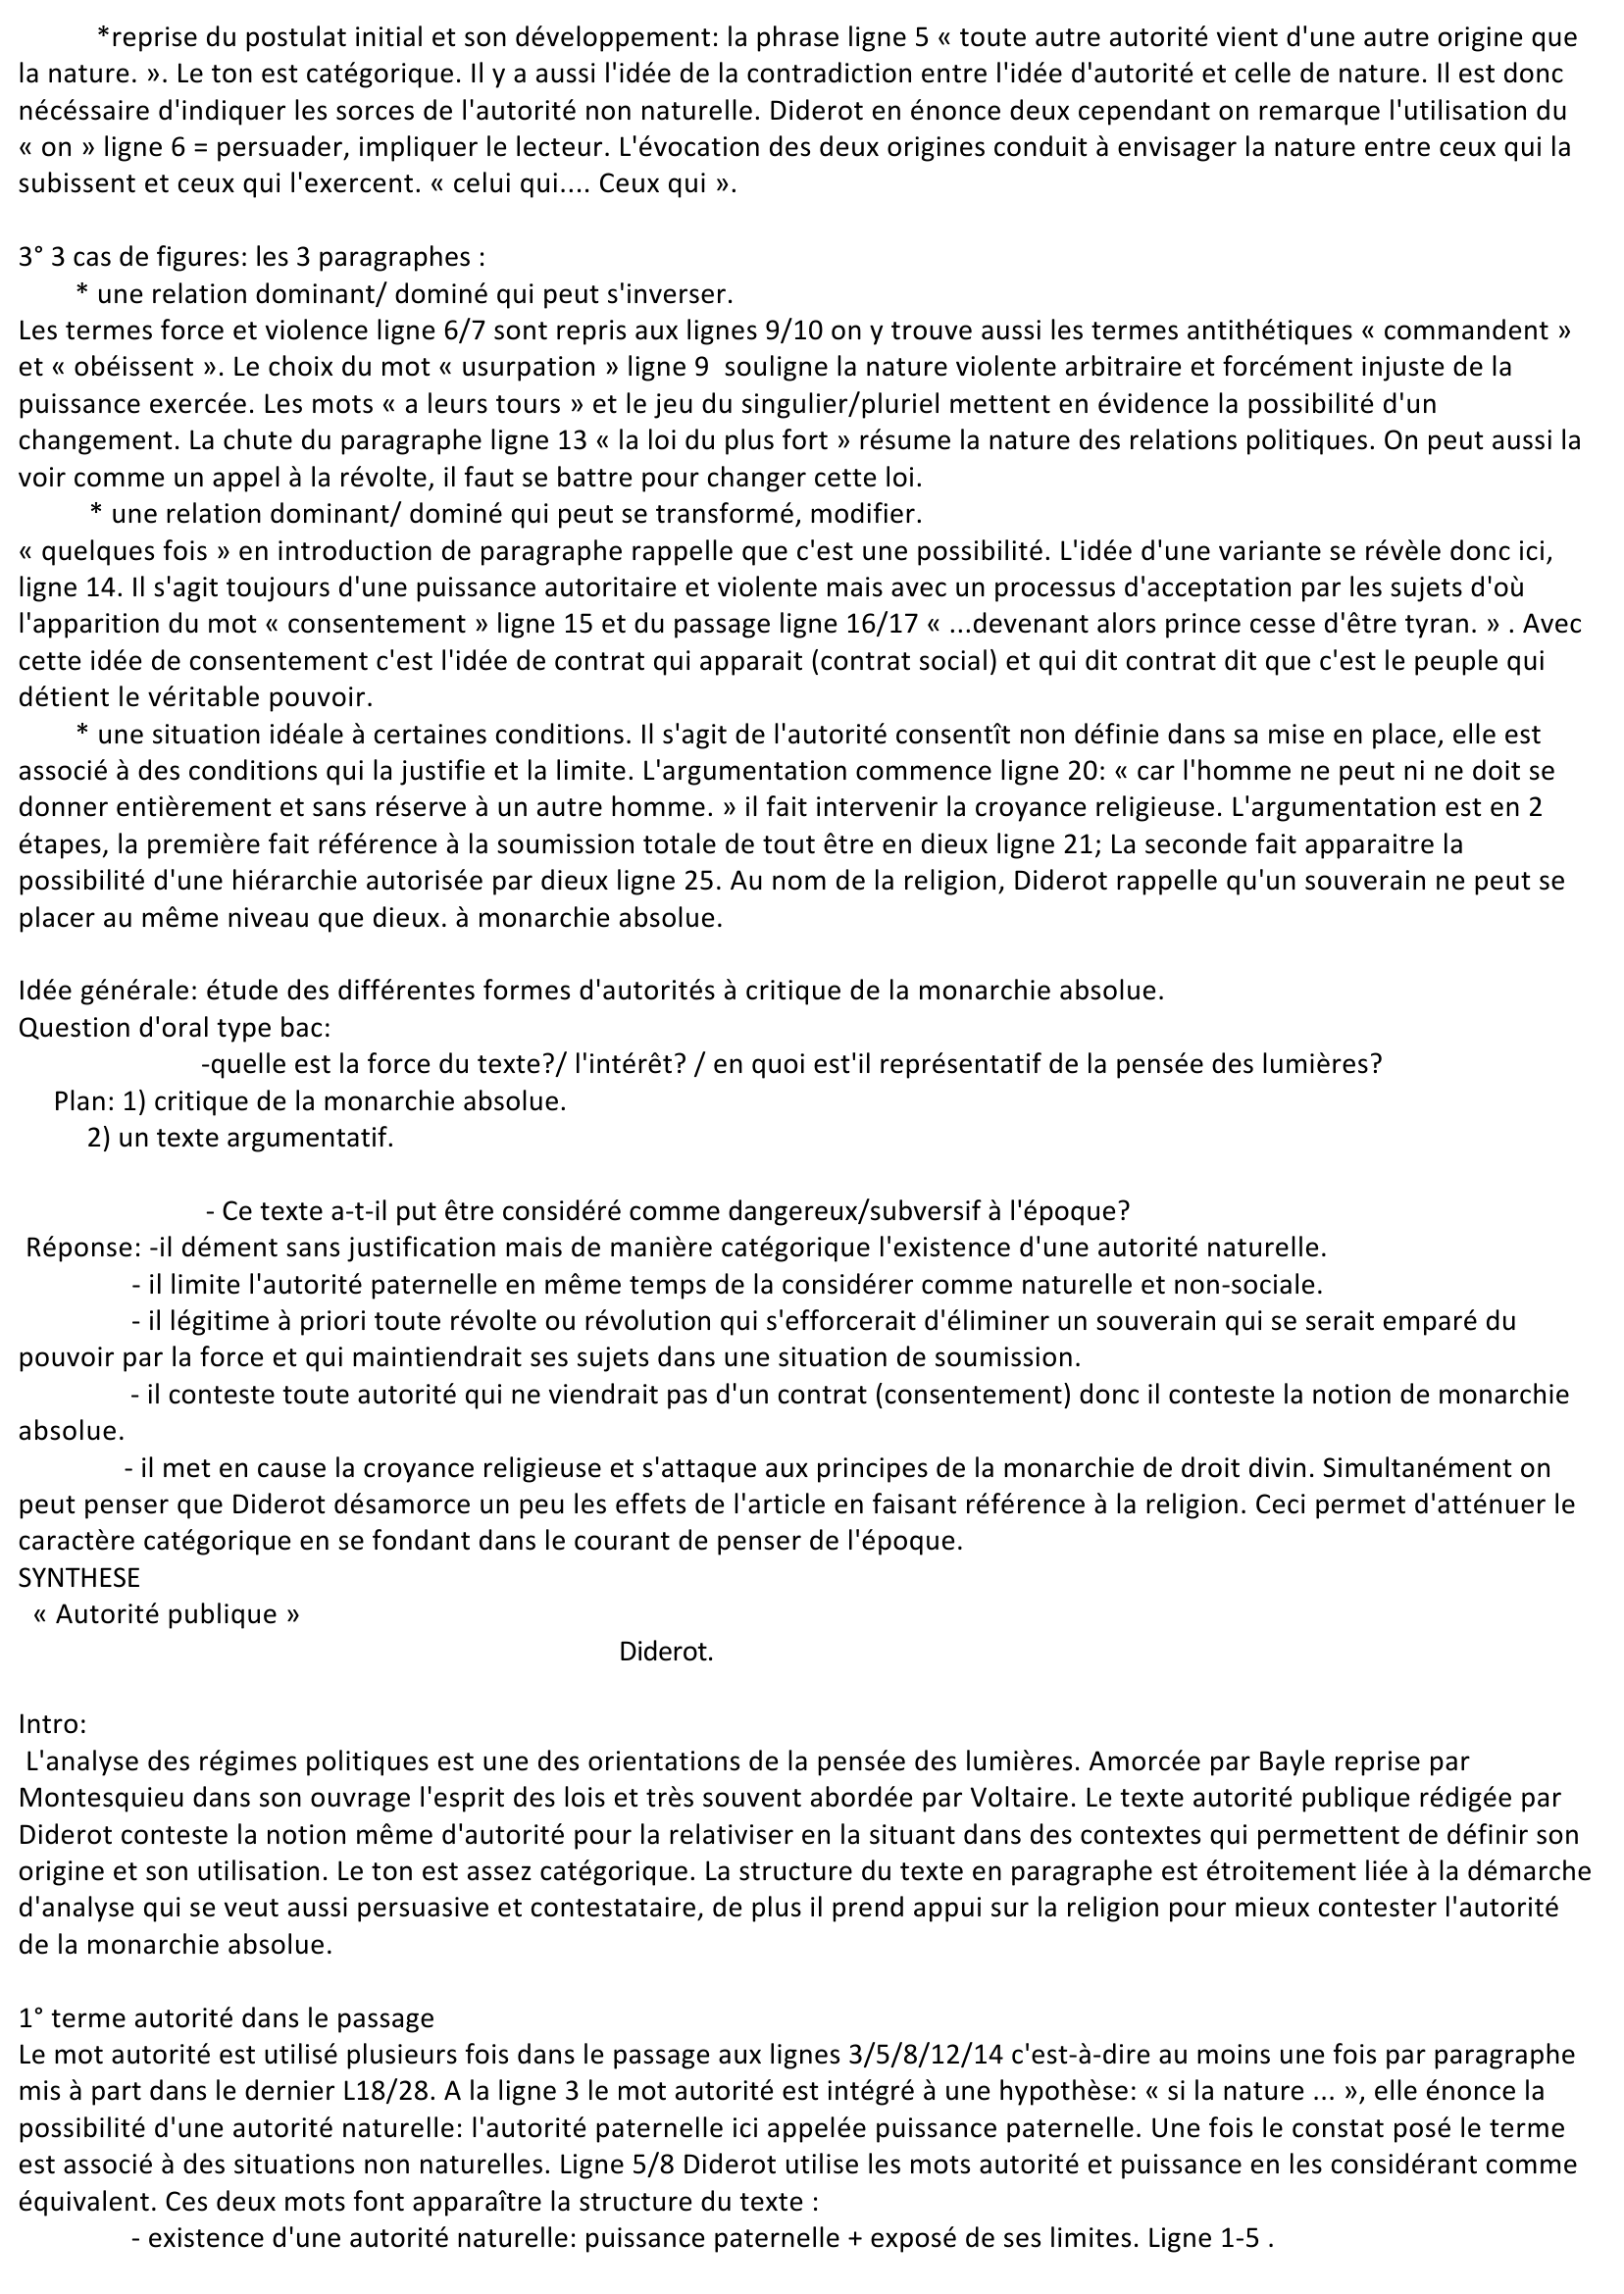 Prévisualisation du document Synthèse : autorité publique Diderot